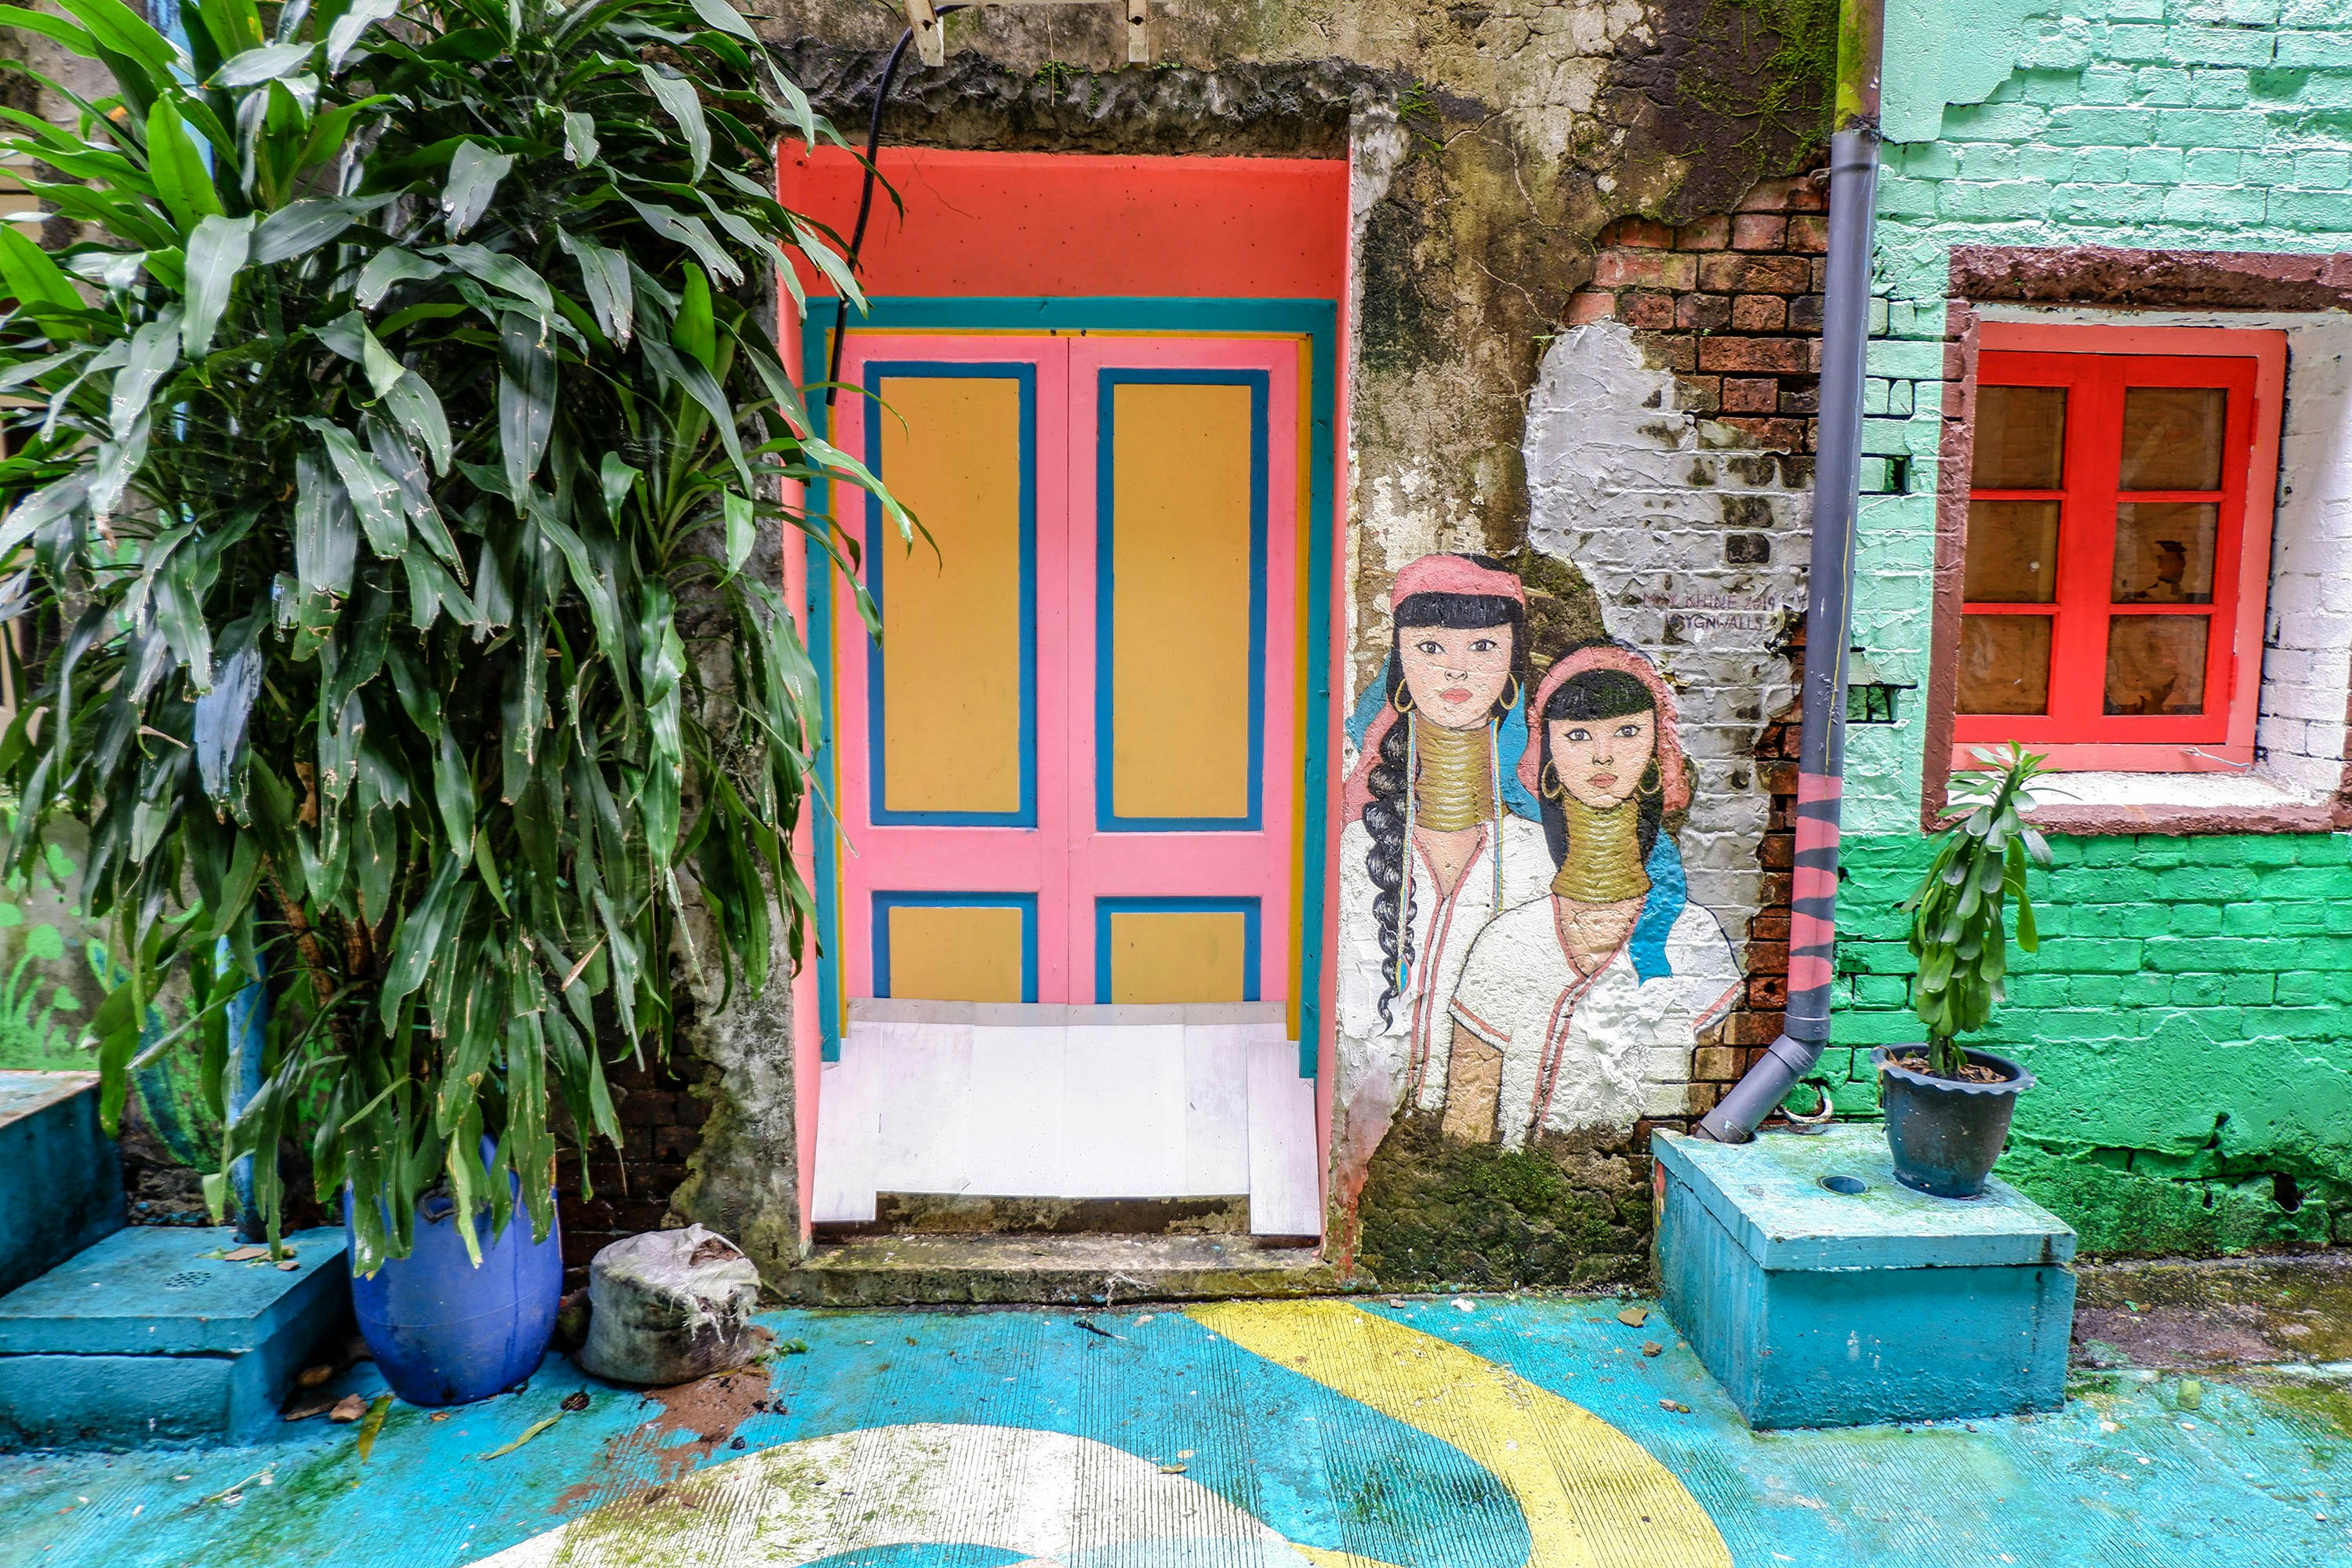 Painted doorway in Yangon